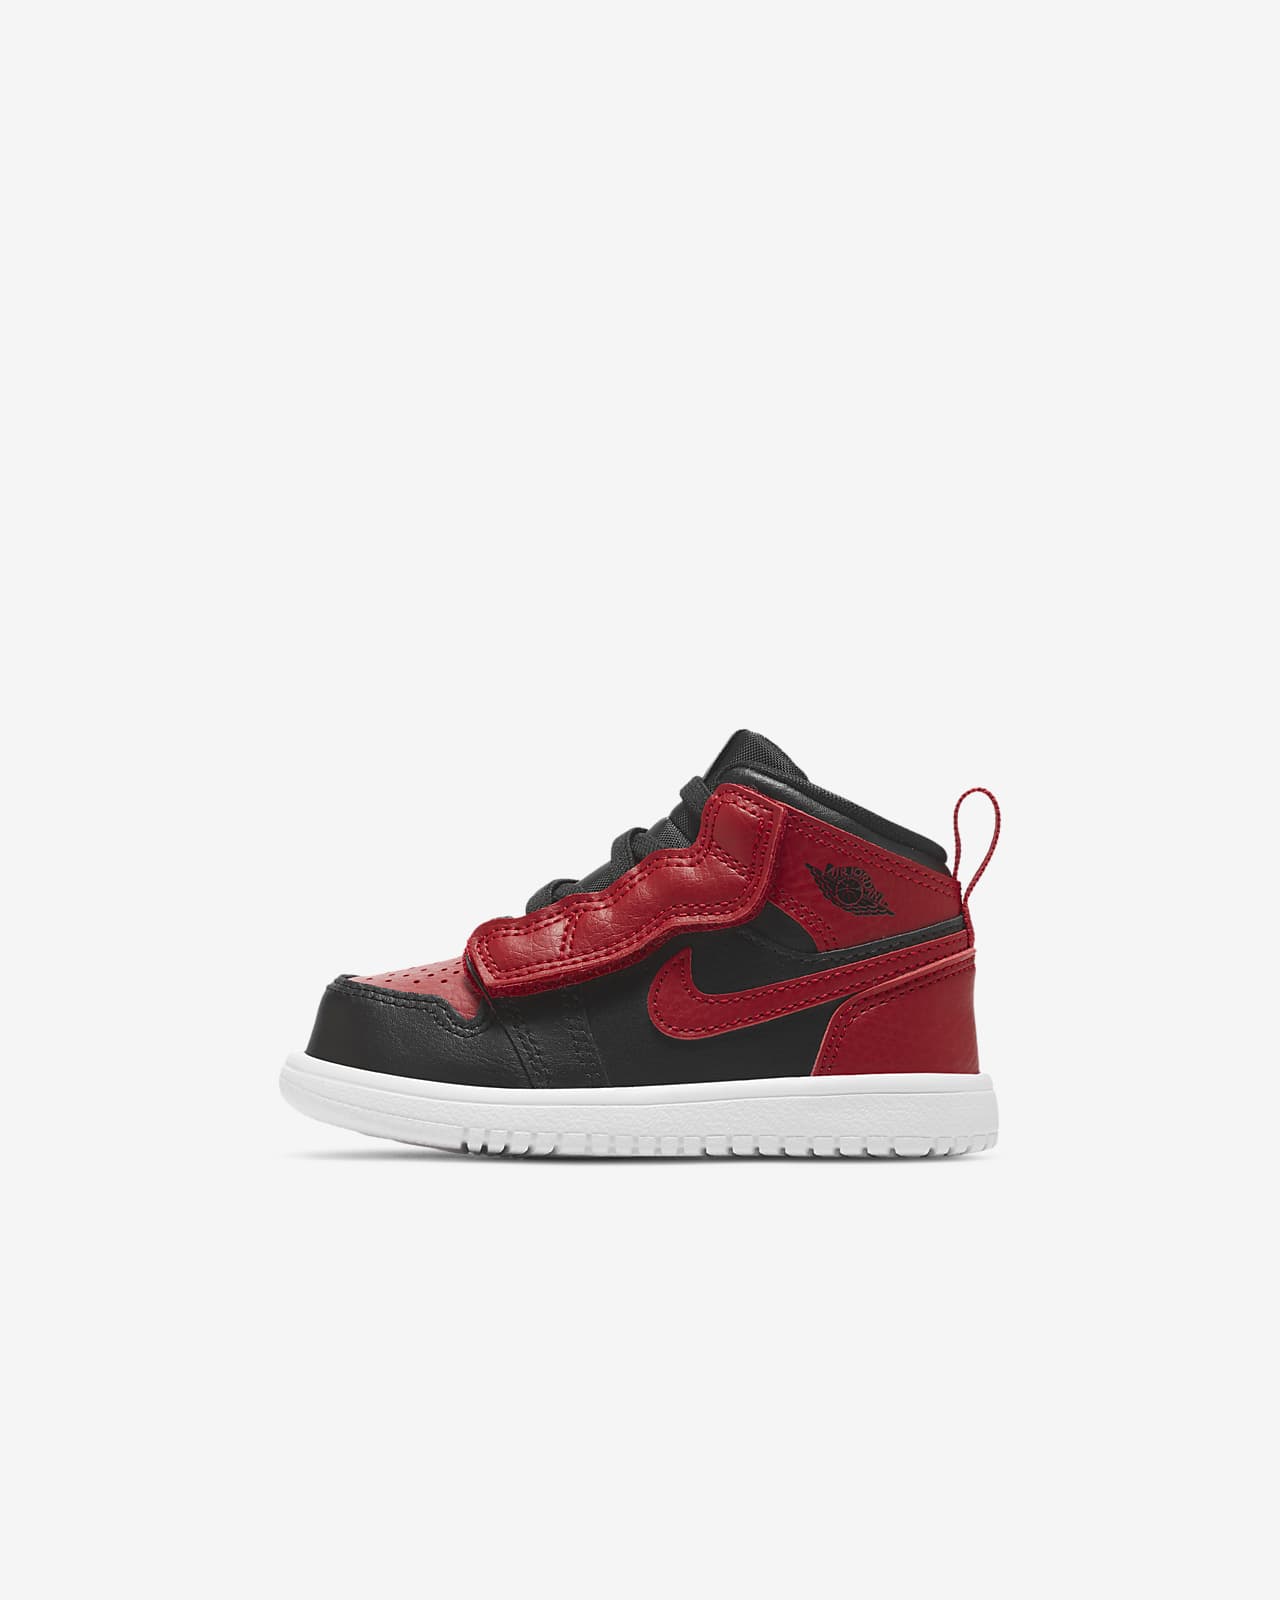 Jordan 1 Mid Baby and Toddler Shoe. Nike NL